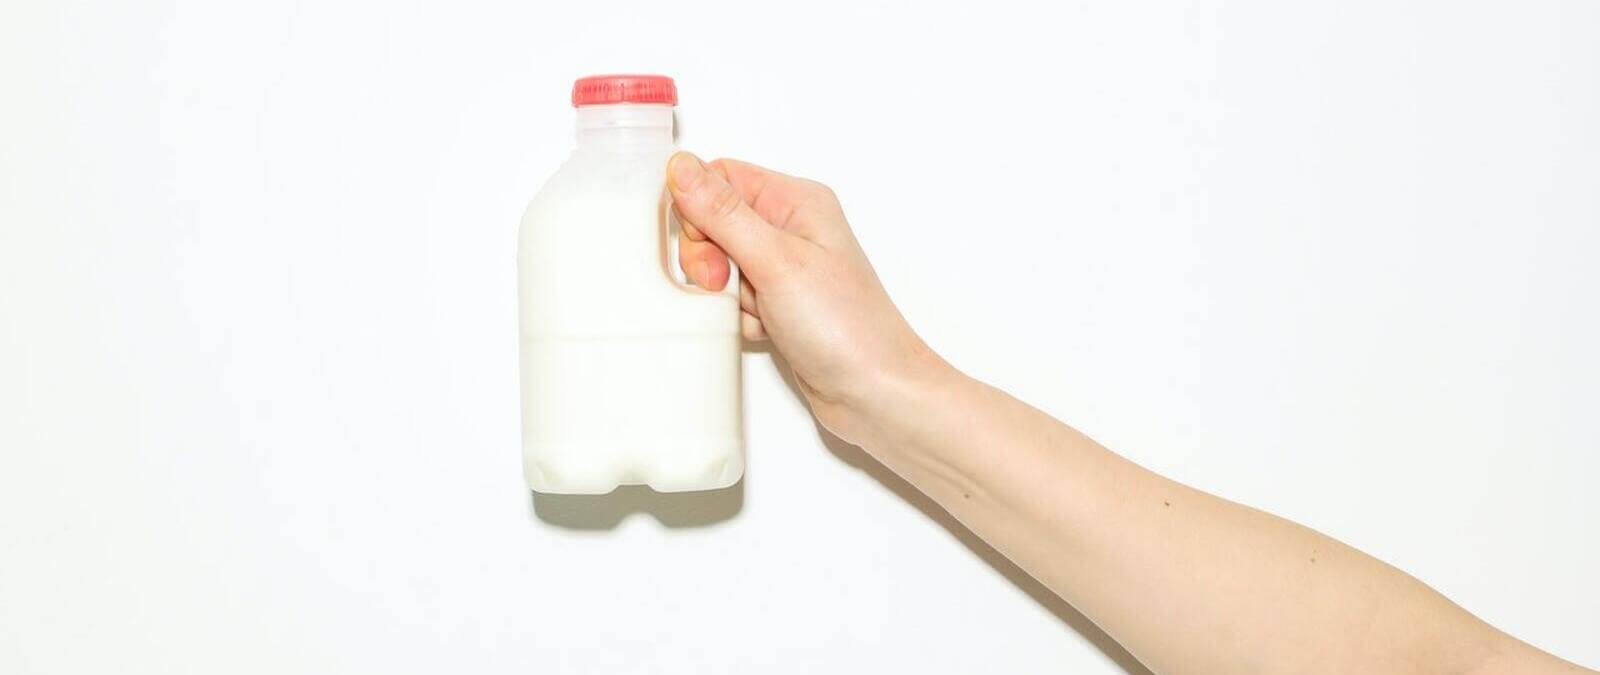 La leche, ¿dentro o fuera de nevera? Depende del tipo de tratamiento que ha recibido y de si el envase está abierto o cerrado · Maldita.es - Periodismo para que no